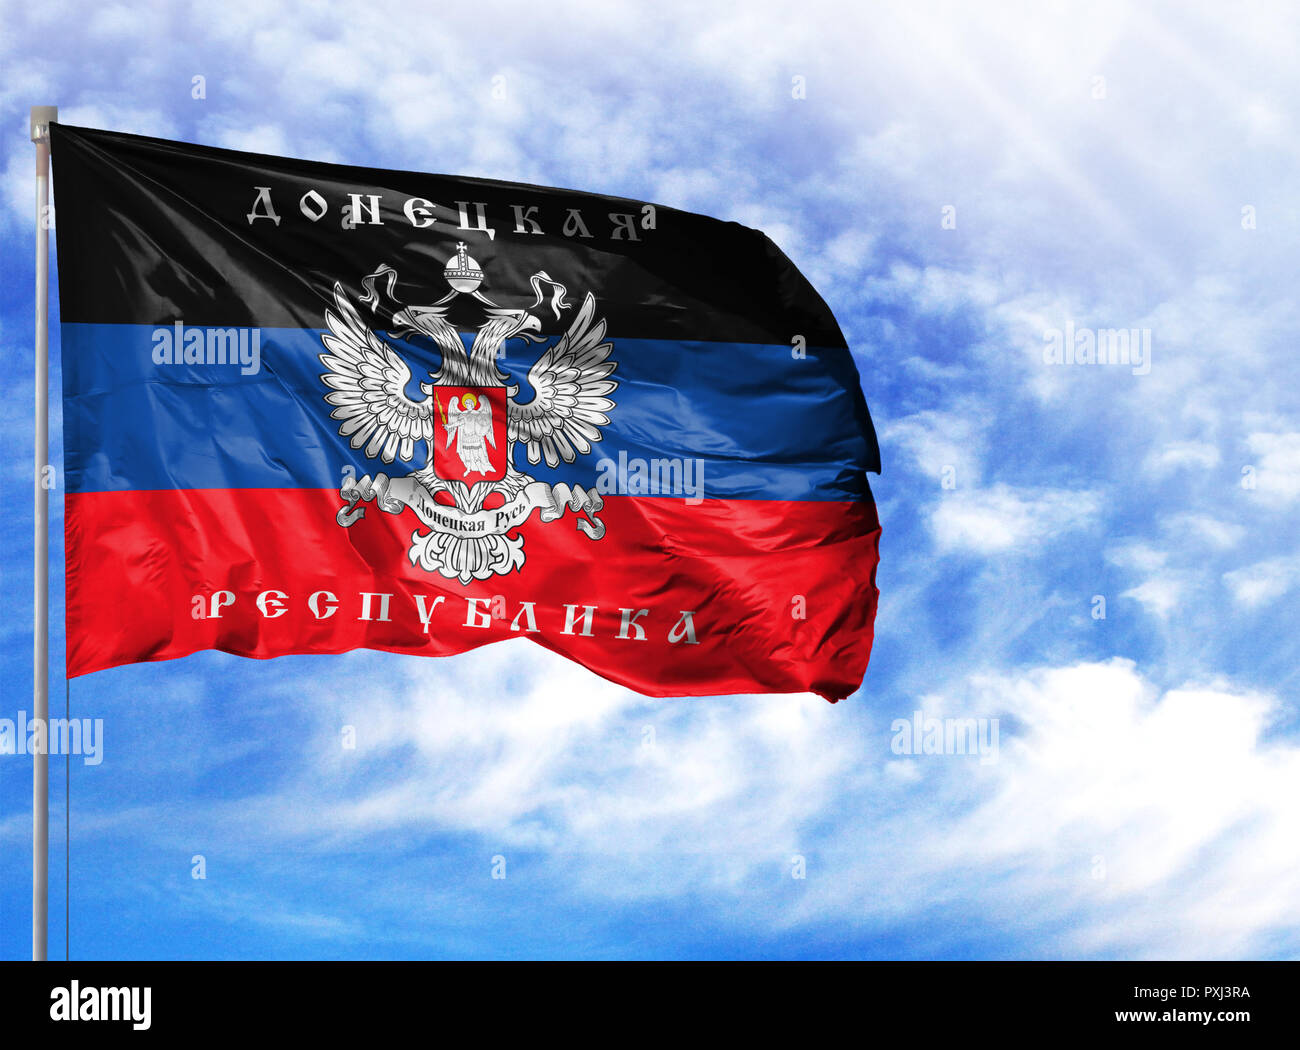 Flagge der Volksrepublik Donezk, schwarz blau rote Flagge des nicht  anerkannten Staates der Volksrepublik Donezk Stockfotografie - Alamy